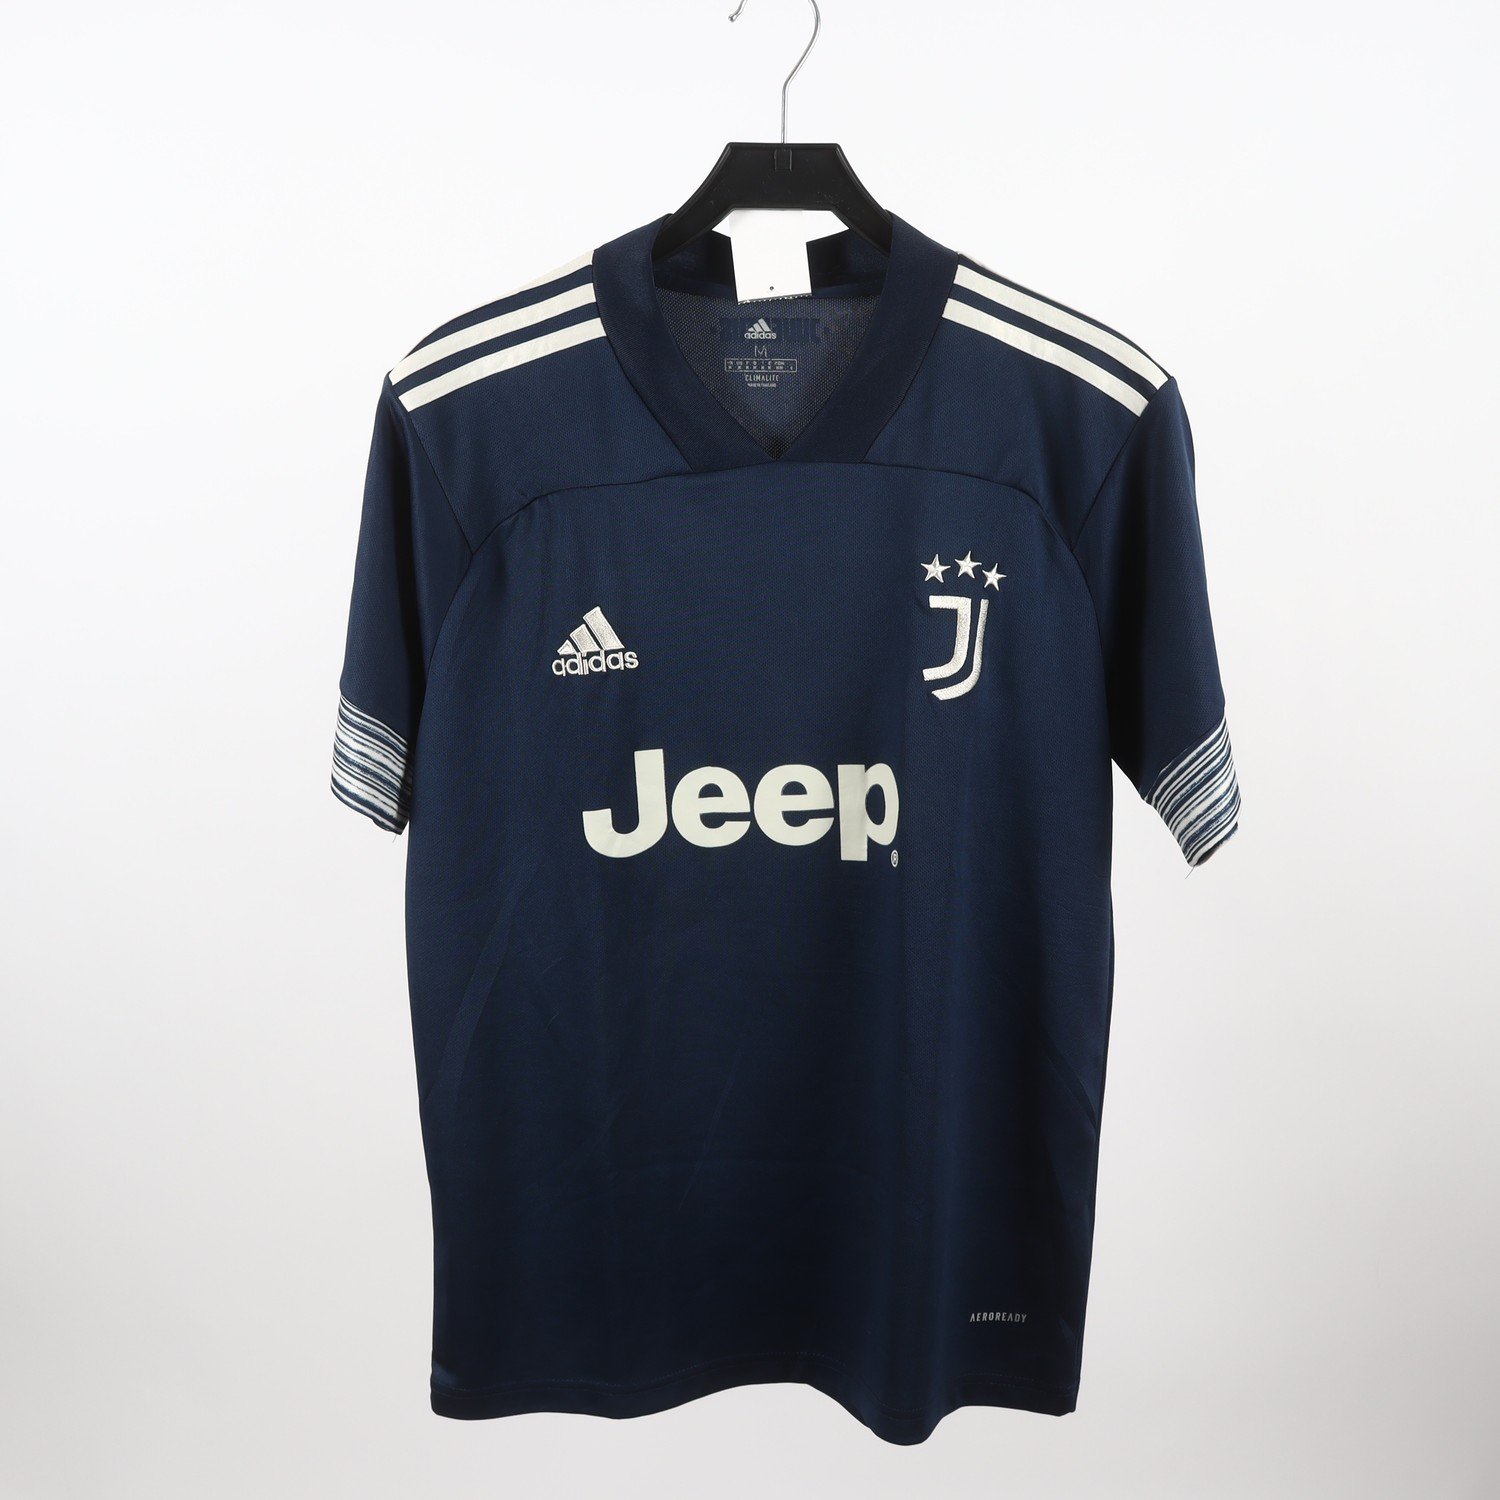 T-Shirt, Juventus, Adidas, Blå, Stl M